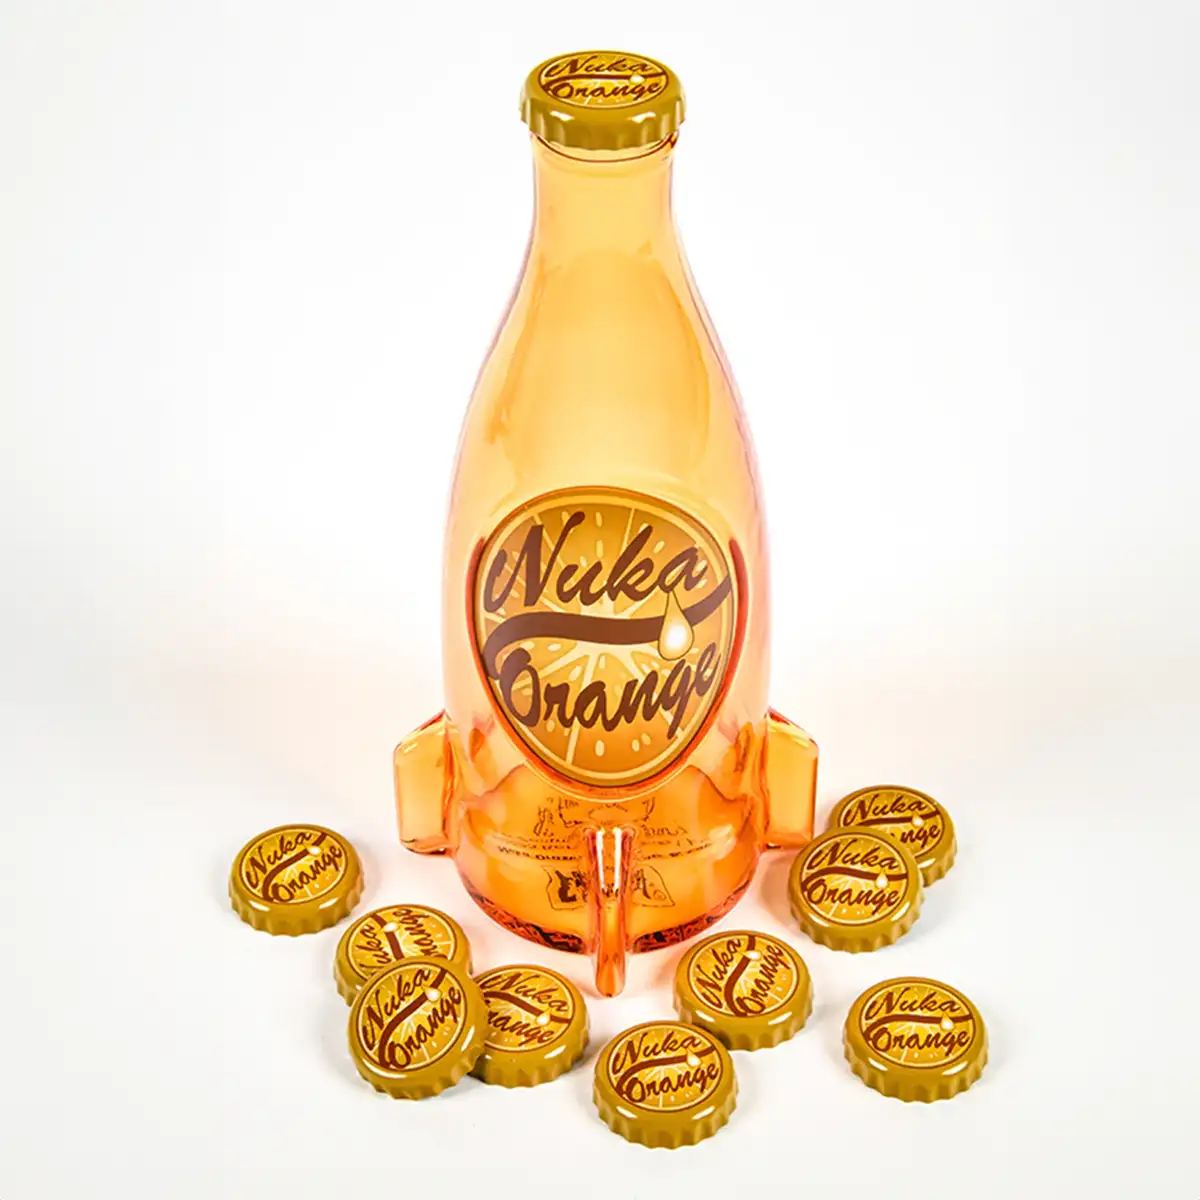 Fallout "Nuka Cola Orange" Glass Bottle and Caps Image 3